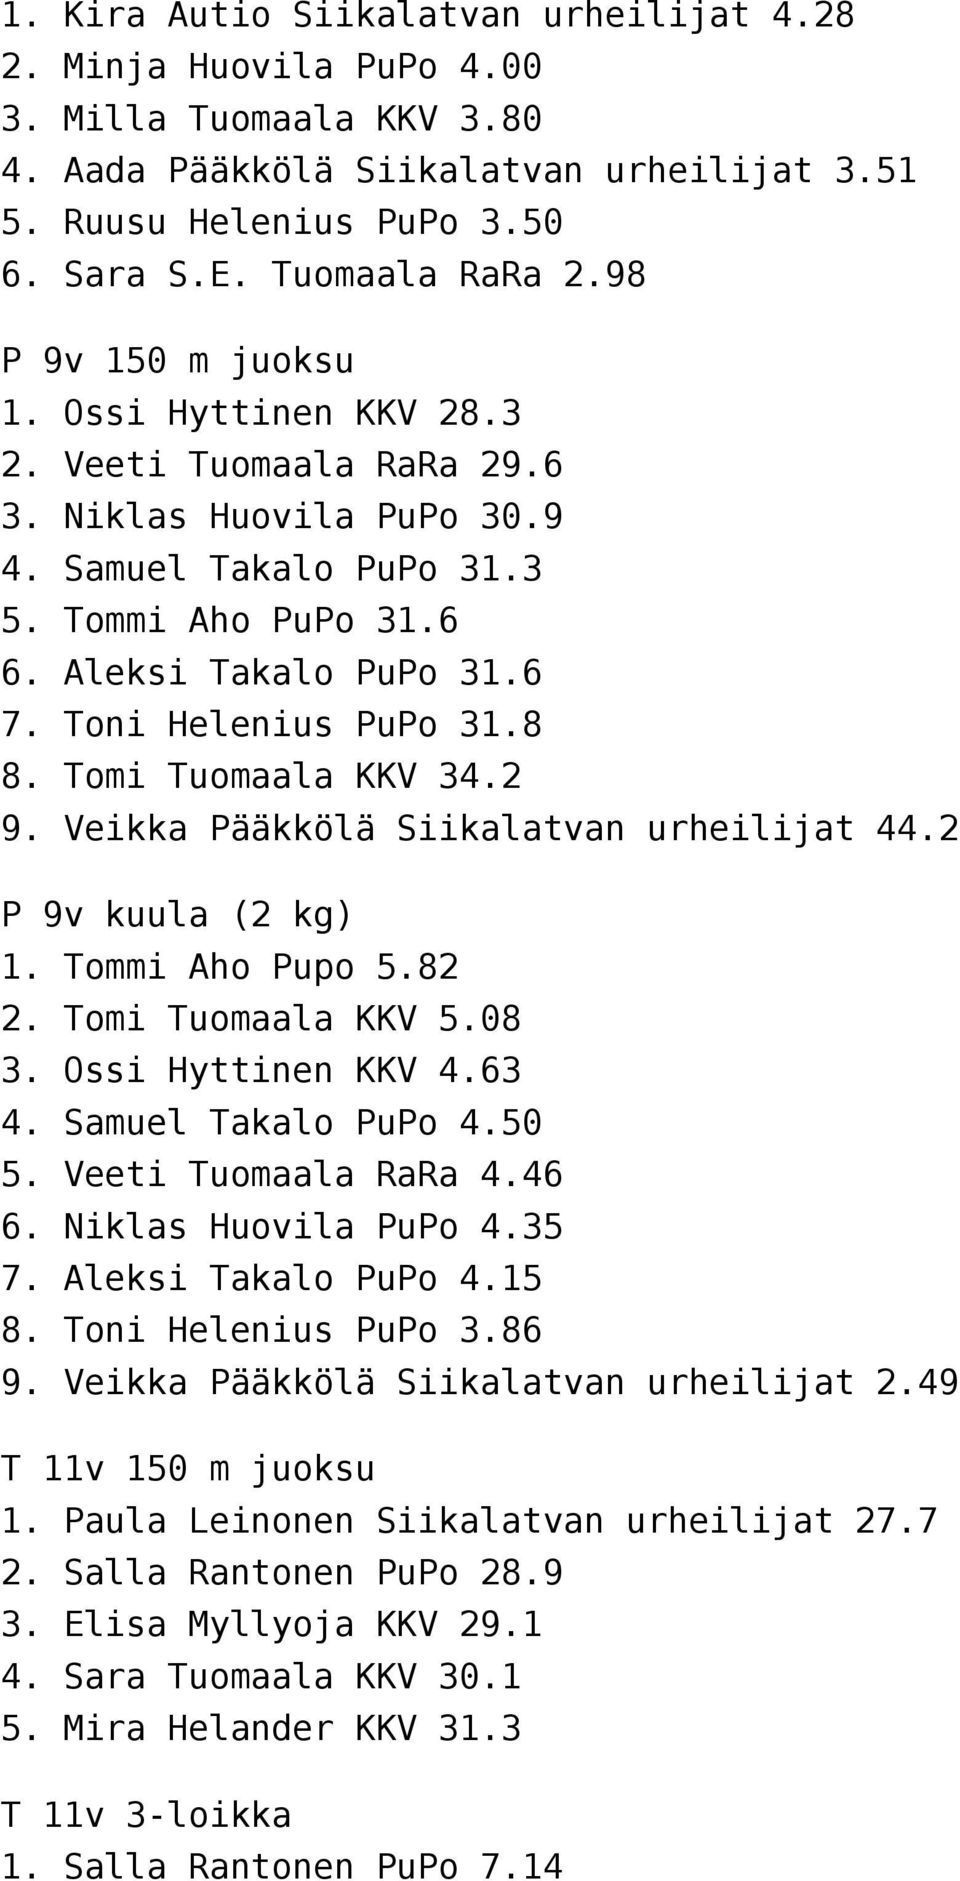 Toni Helenius PuPo 31.8 8. Tomi Tuomaala KKV 34.2 9. Veikka Pääkkölä Siikalatvan urheilijat 44.2 P 9v kuula (2 kg) 1. Tommi Aho Pupo 5.82 2. Tomi Tuomaala KKV 5.08 3. Ossi Hyttinen KKV 4.63 4.